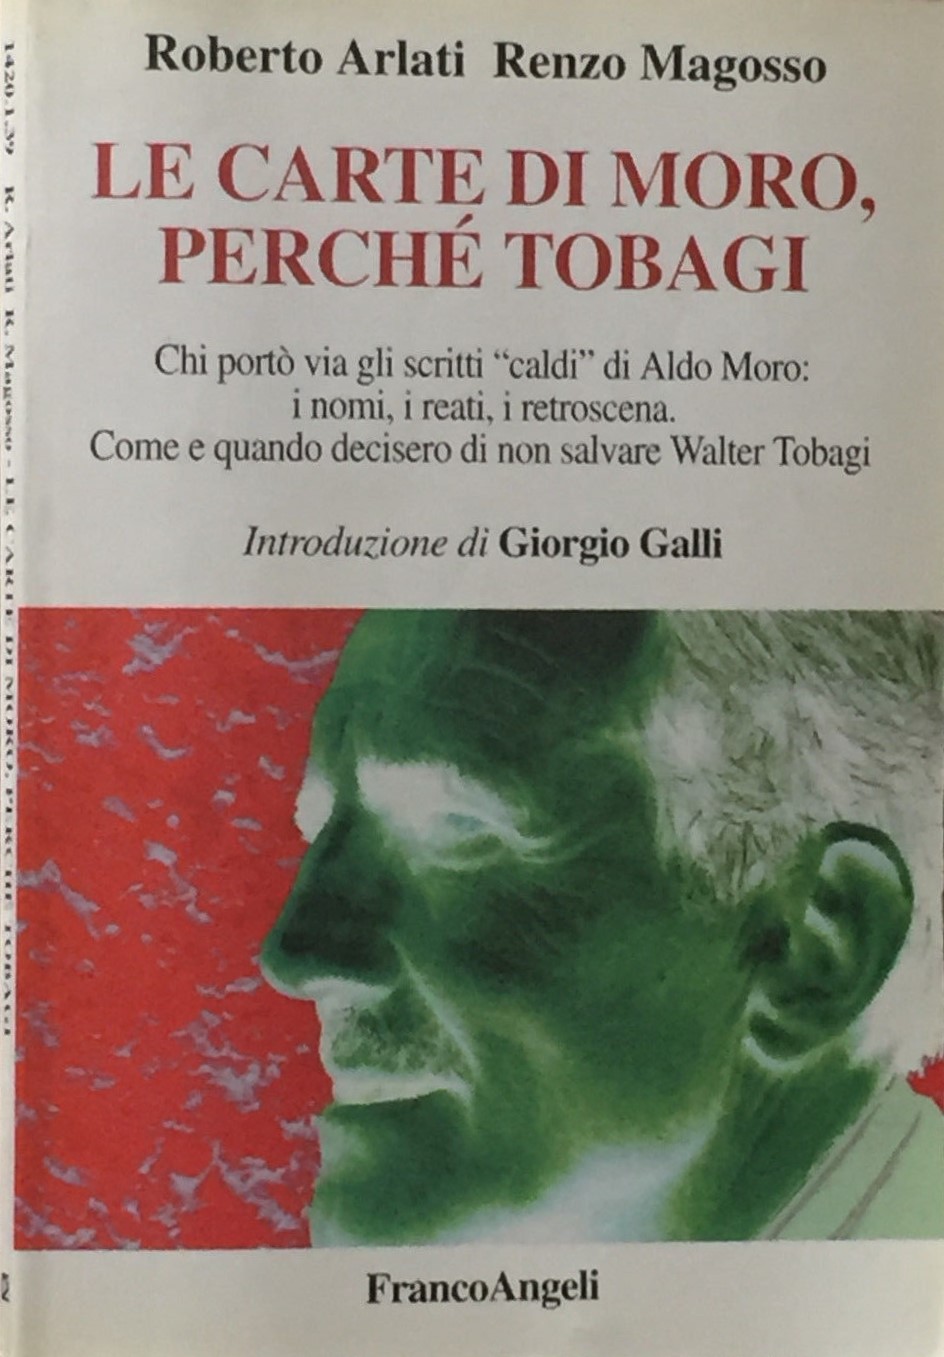 Questo libro spiega dove sono finite le carte di Moro e perché Walter Tobagi non fu salvato